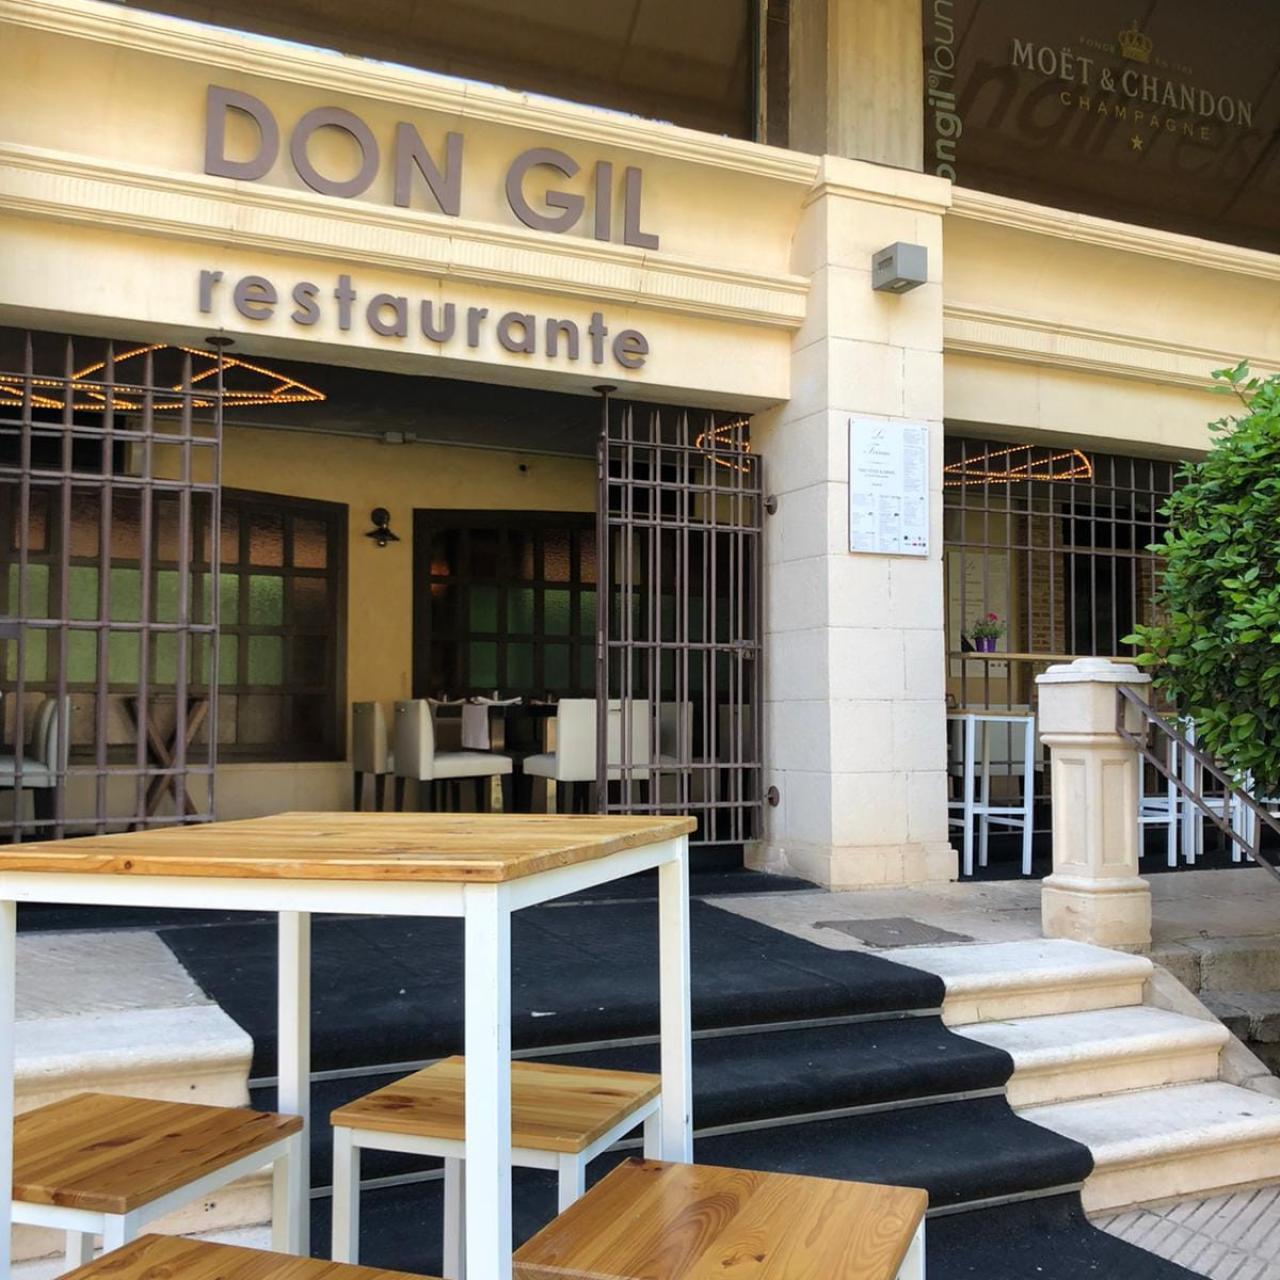 La entrada del restaurante Don Gil.